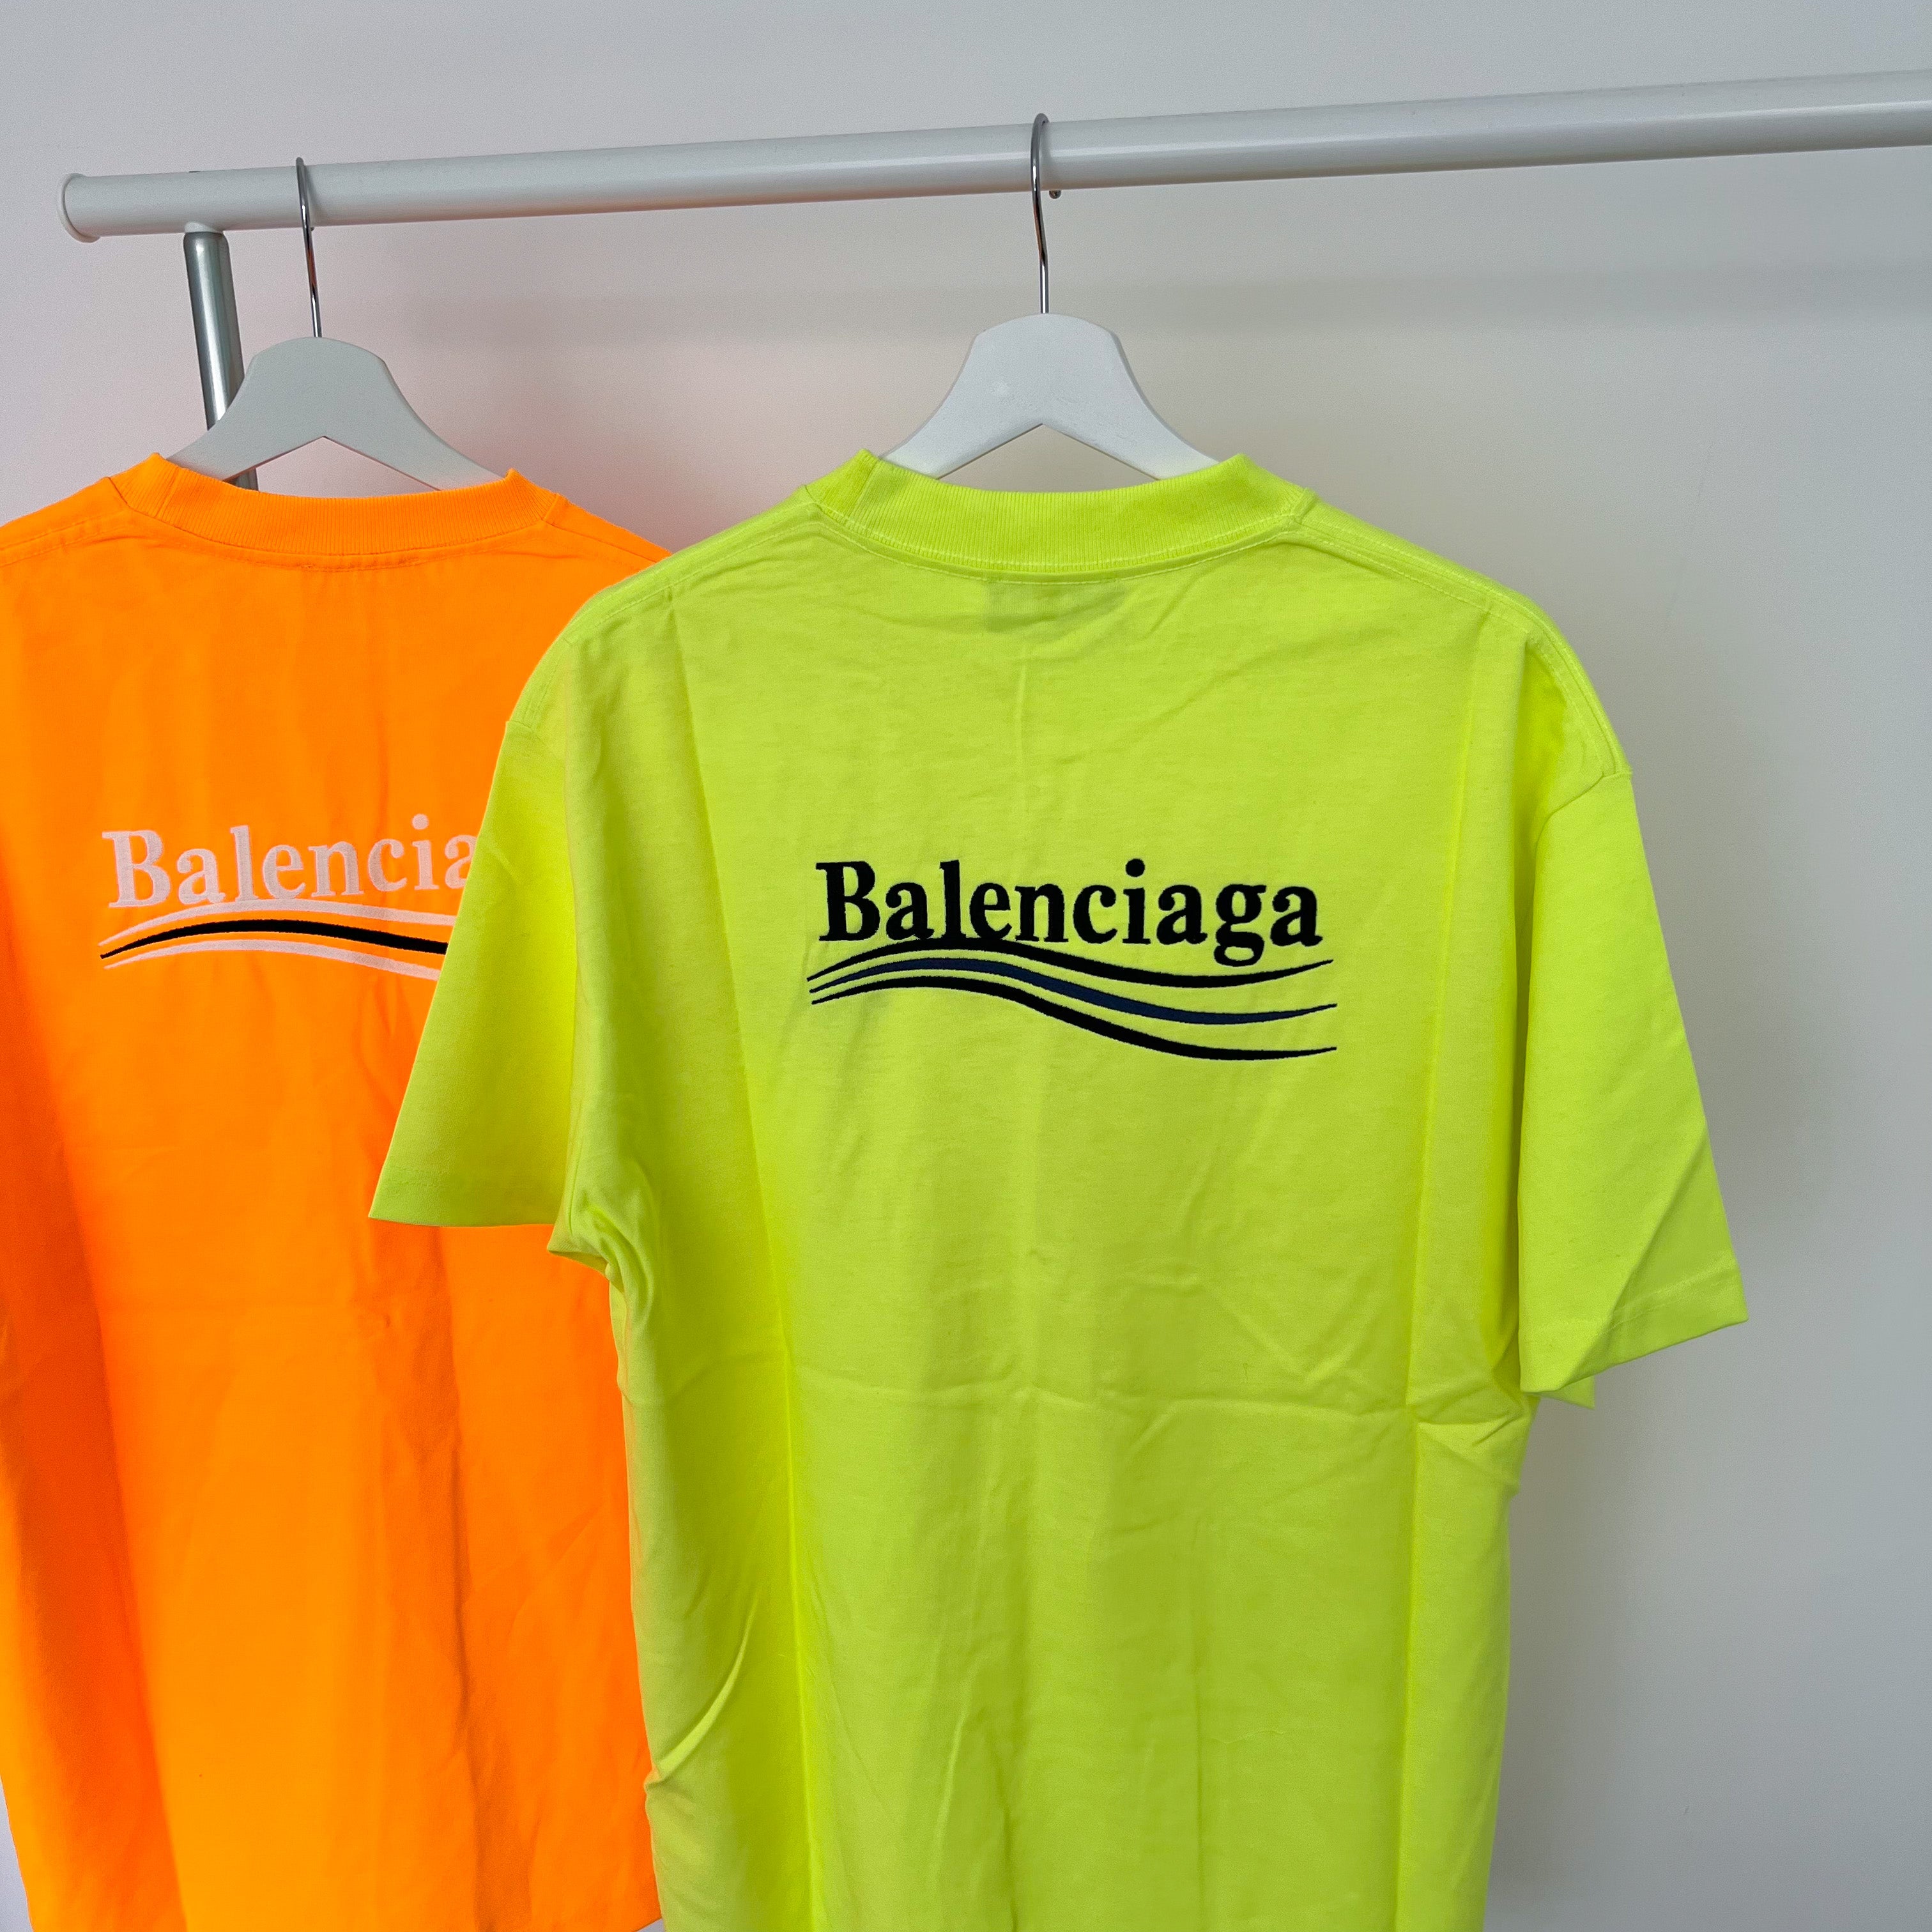 Balenciaga Embroidered Political Campaign Tee - Neon Yellow